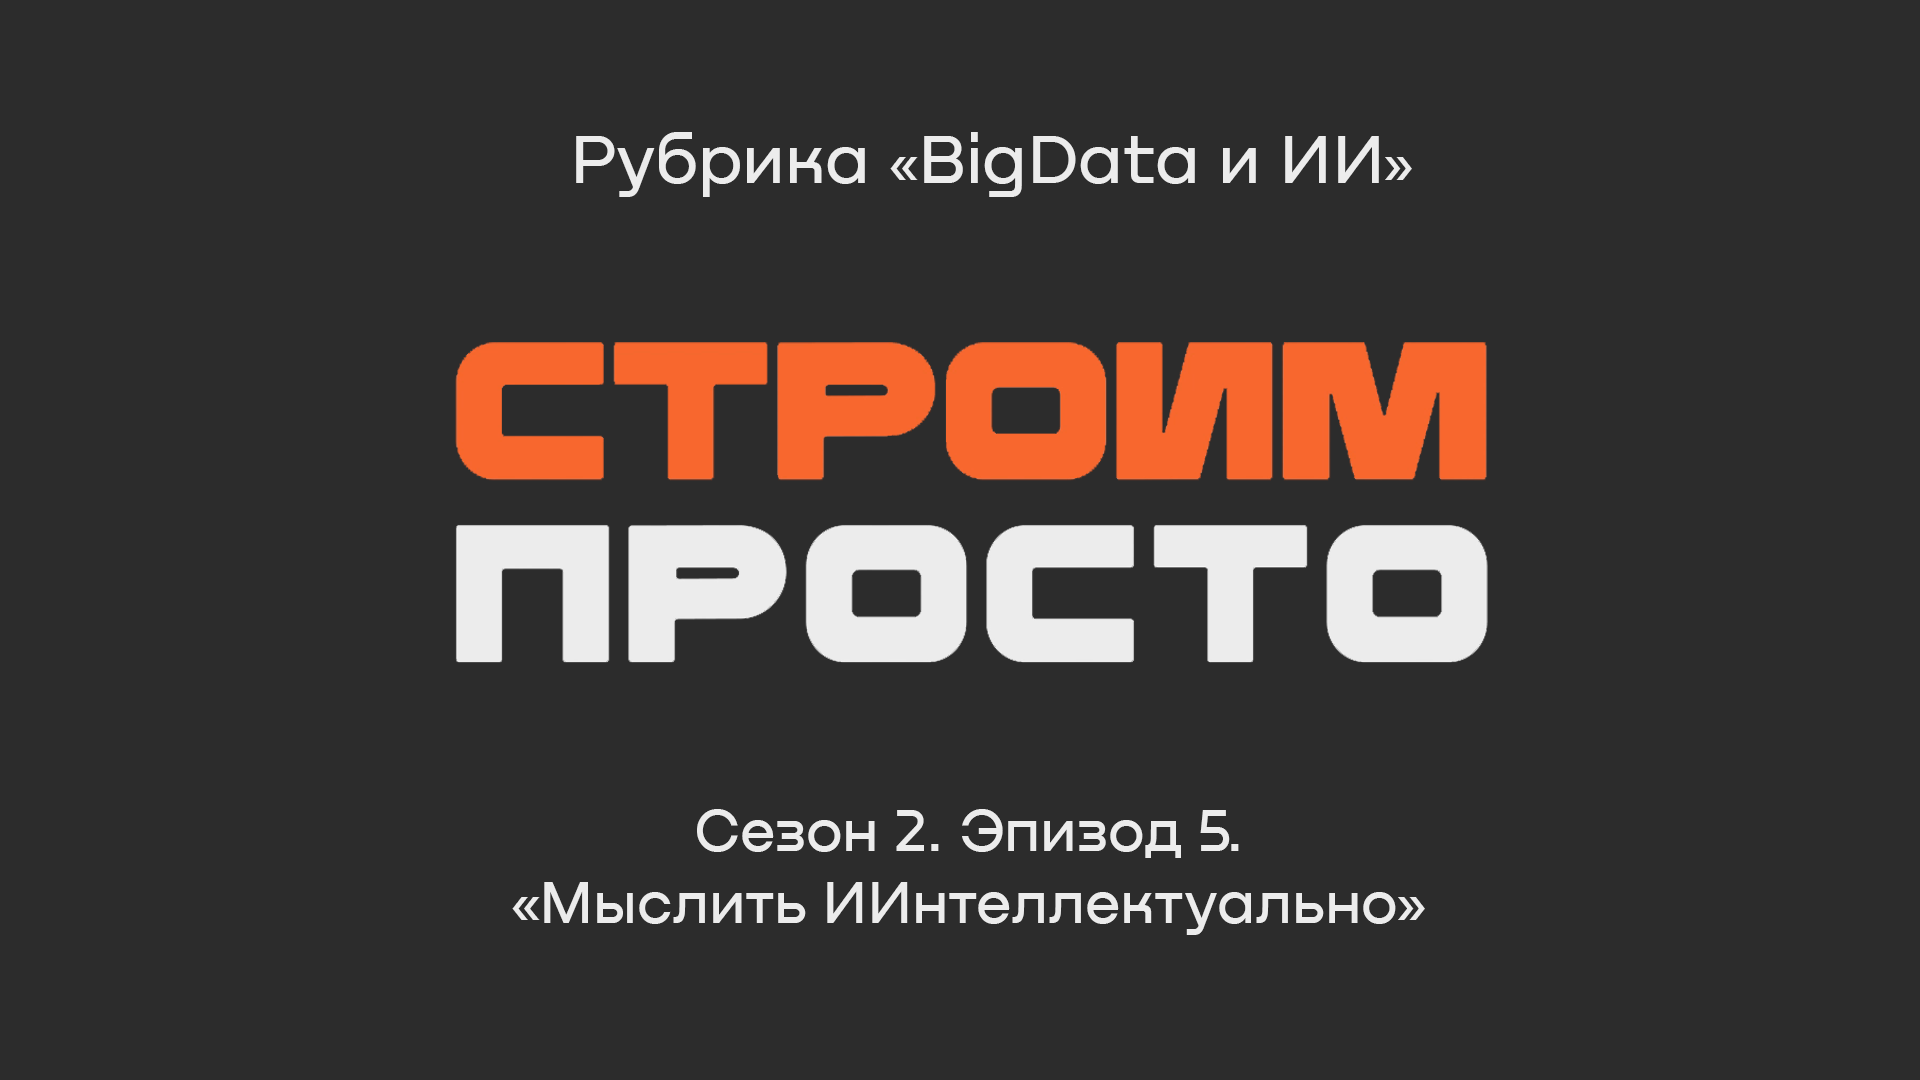 «Мыслить ИИнтеллектуально», Сергей Галкин | Рубрика «BigData и ИИ»